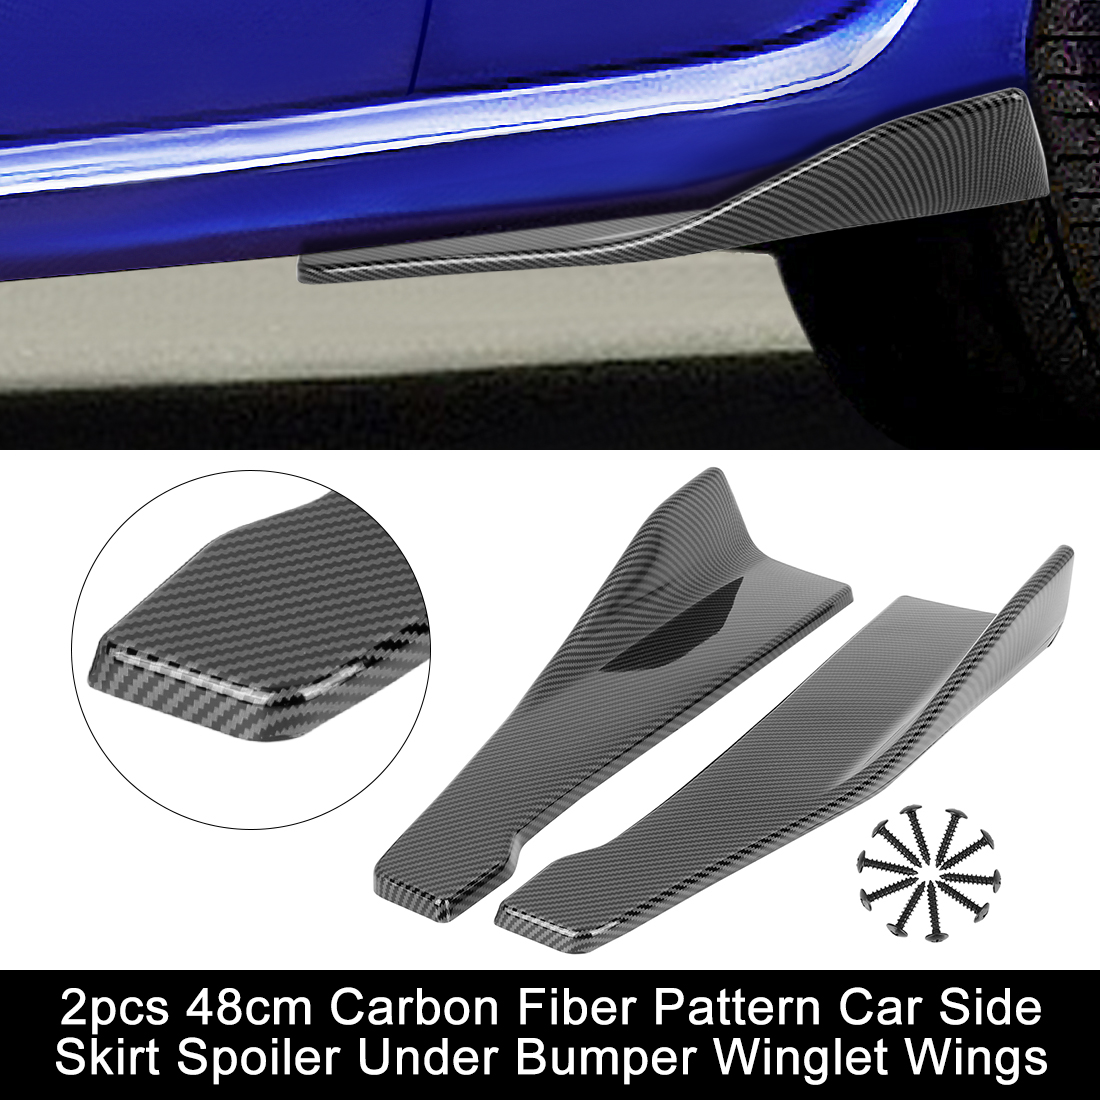 Unique Bargains 2pcs 48cm Carbon Fiber Pattern Car Side Skirt Spoiler Under Bumper Winglet Wings